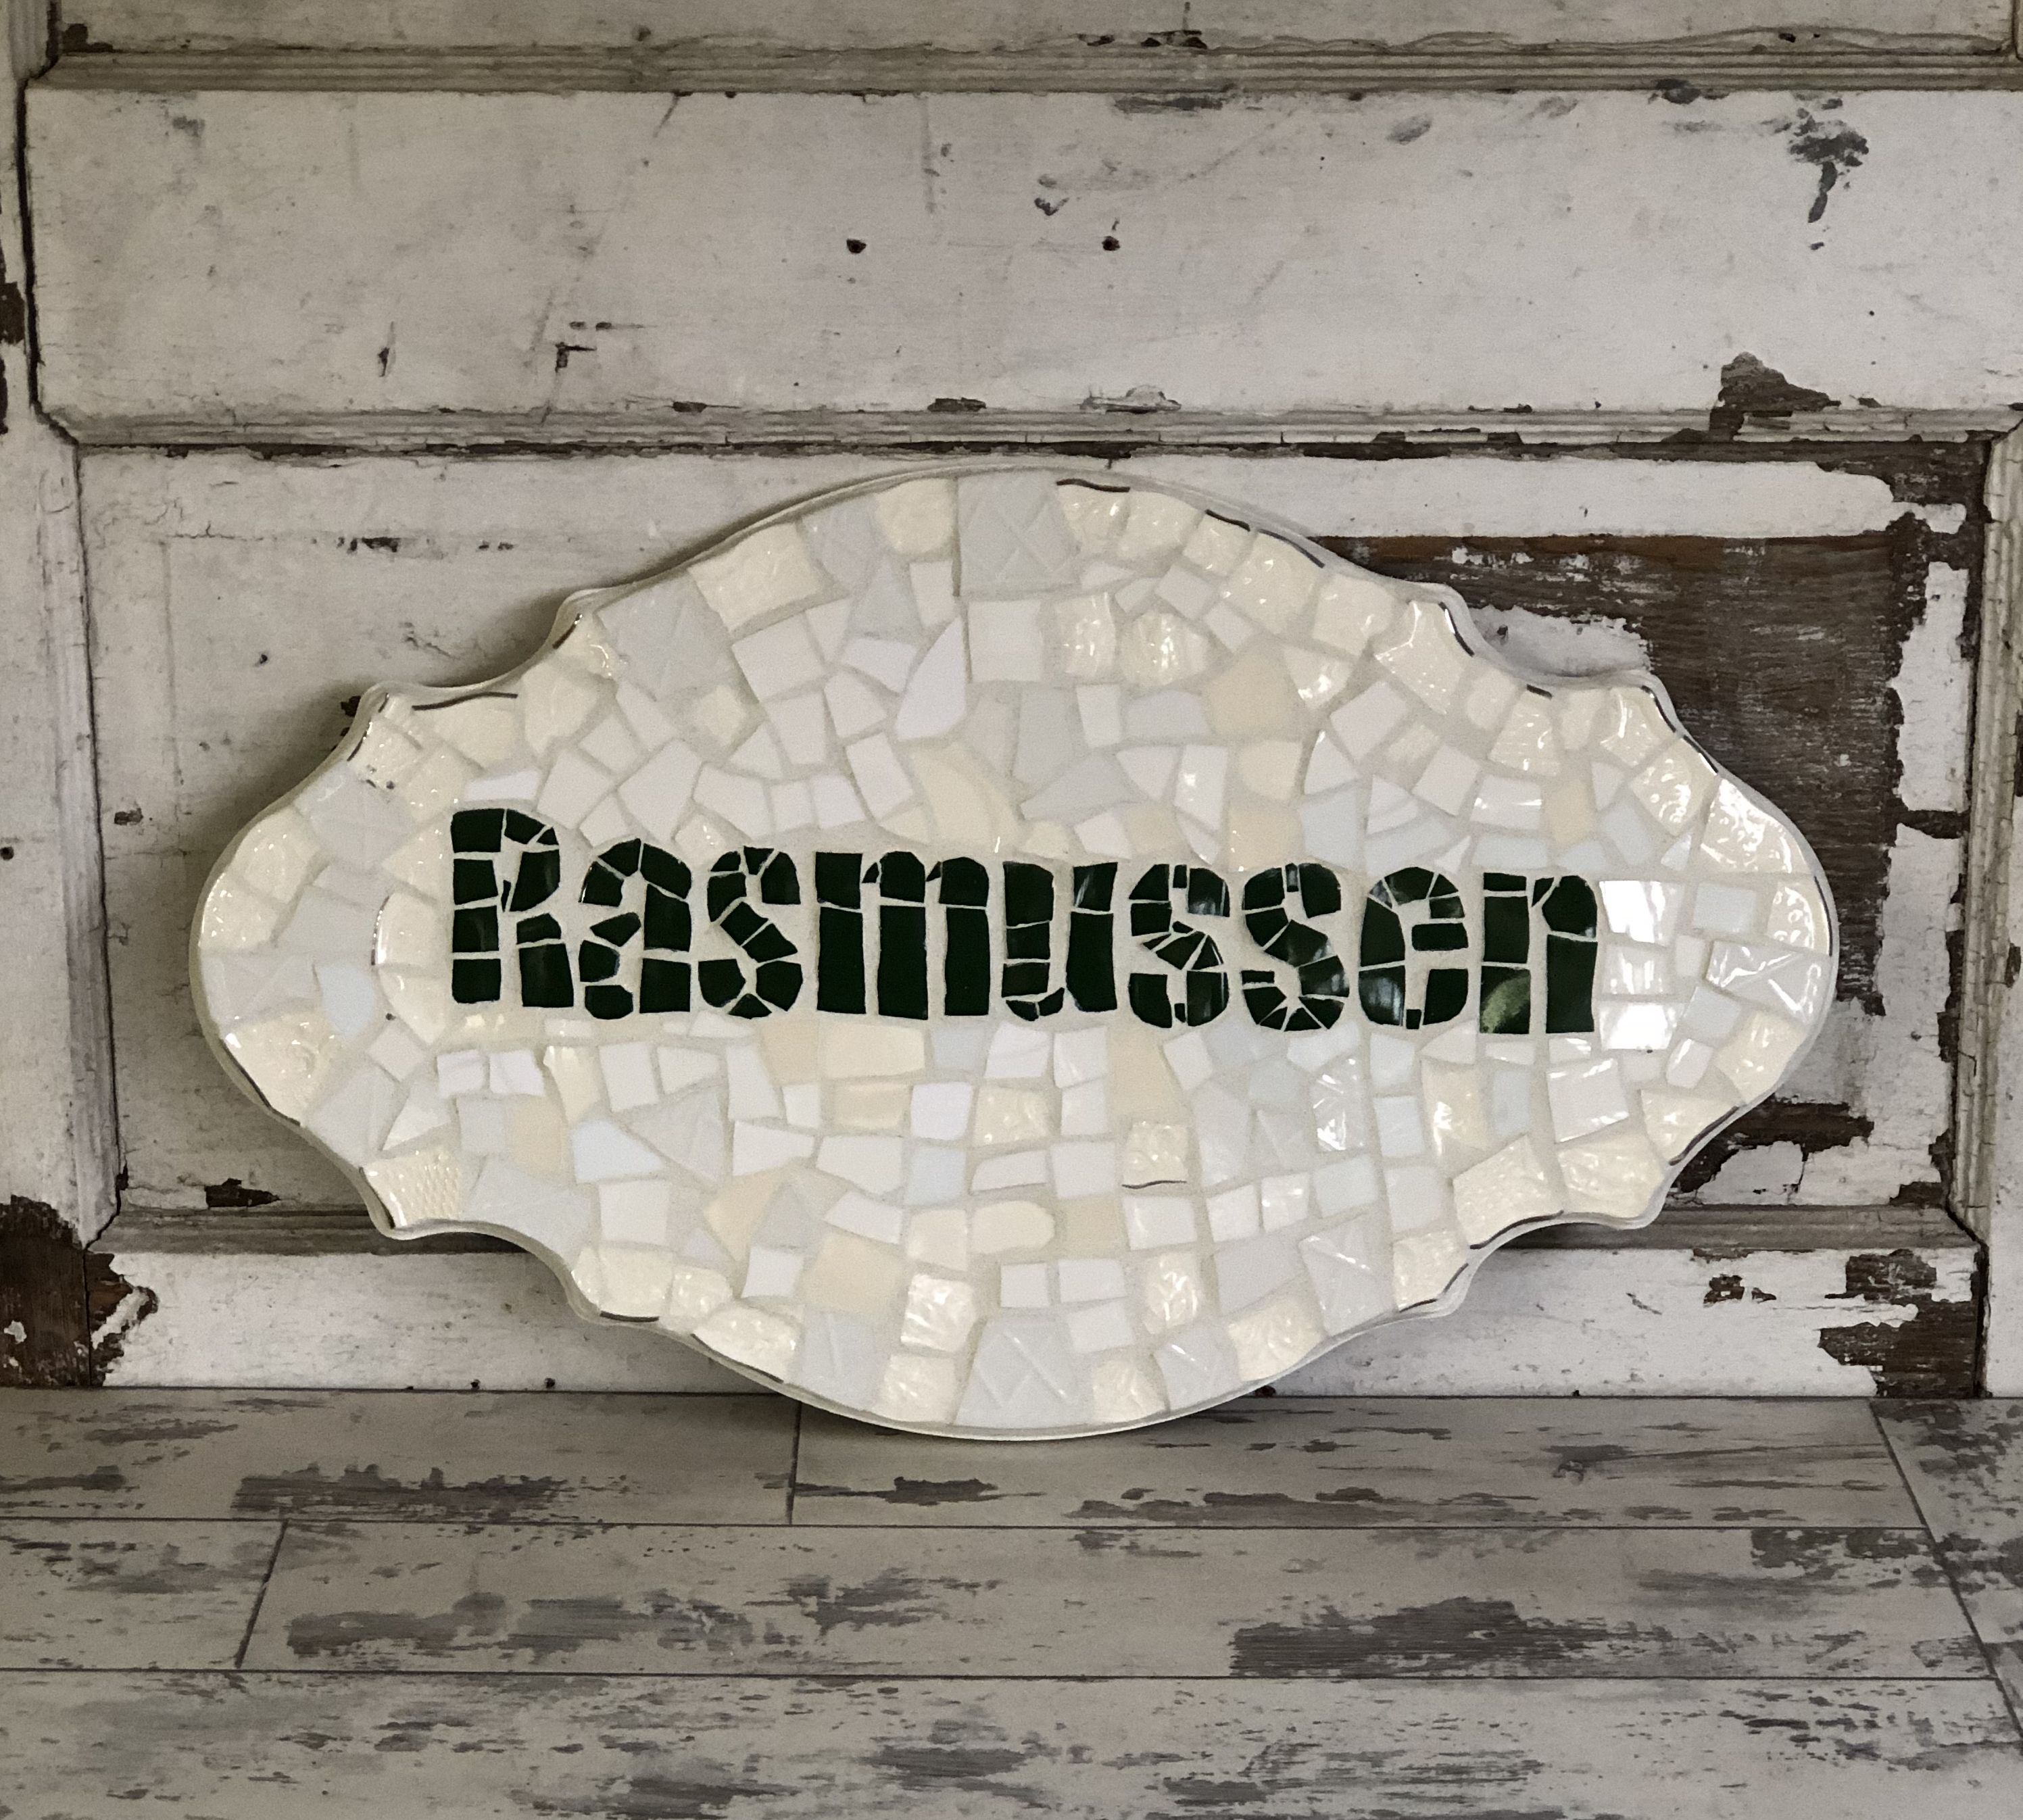 Buy Handmade Mosaic Family Name Sign - Broken China Mosaic, made to ...